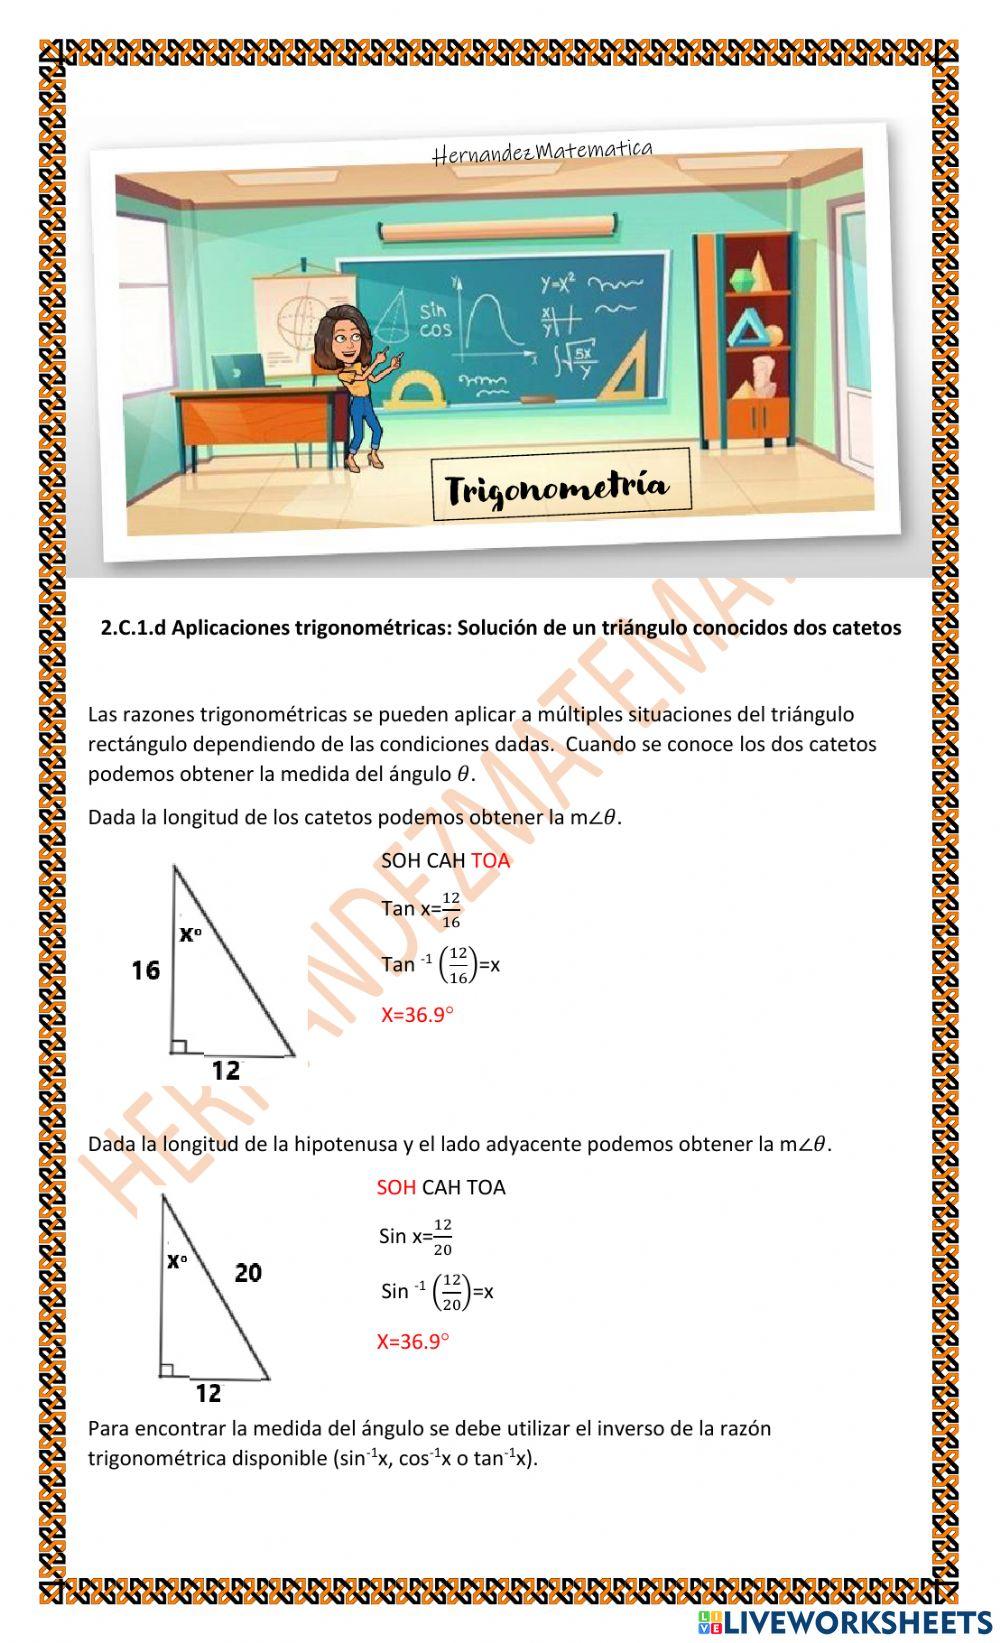 TRIG 2.C.1.d Aplicaciones trigonométricas: Solución de un triángulo conocidos dos catetos